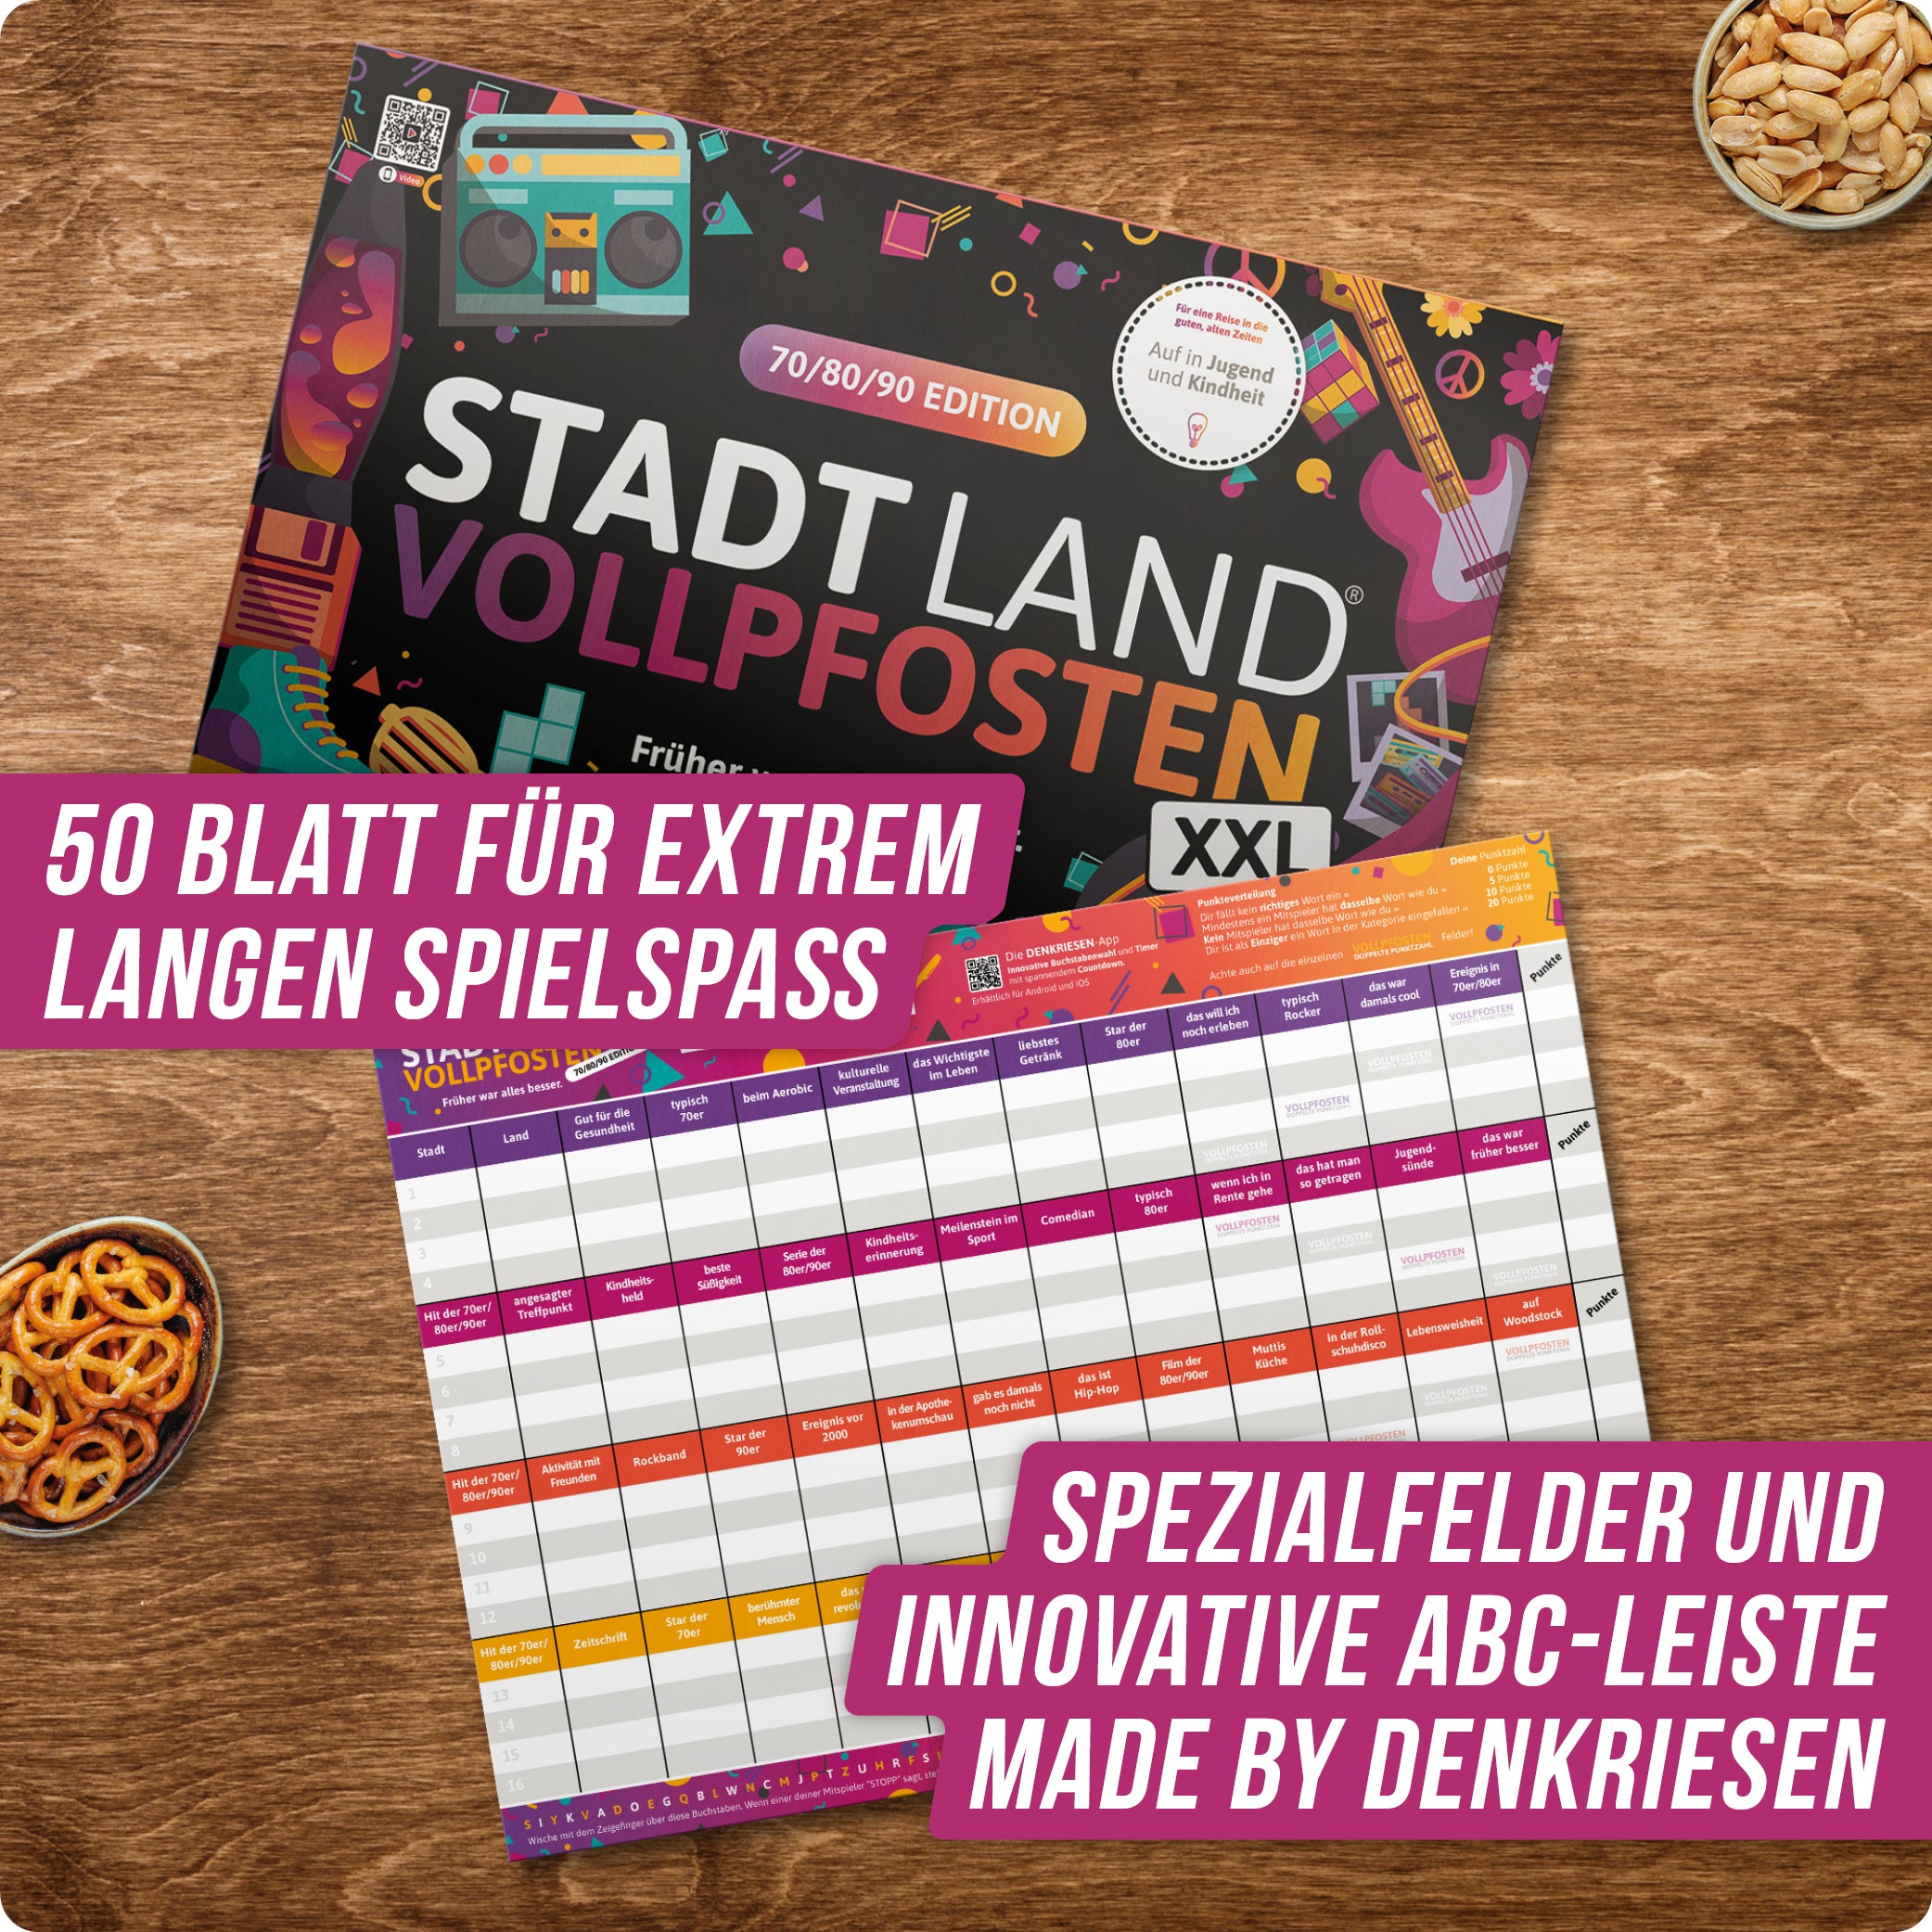 Stadt Land Vollpfosten® 70/80/90 Edition – "Früher war alles besser." | A3 Spielblock